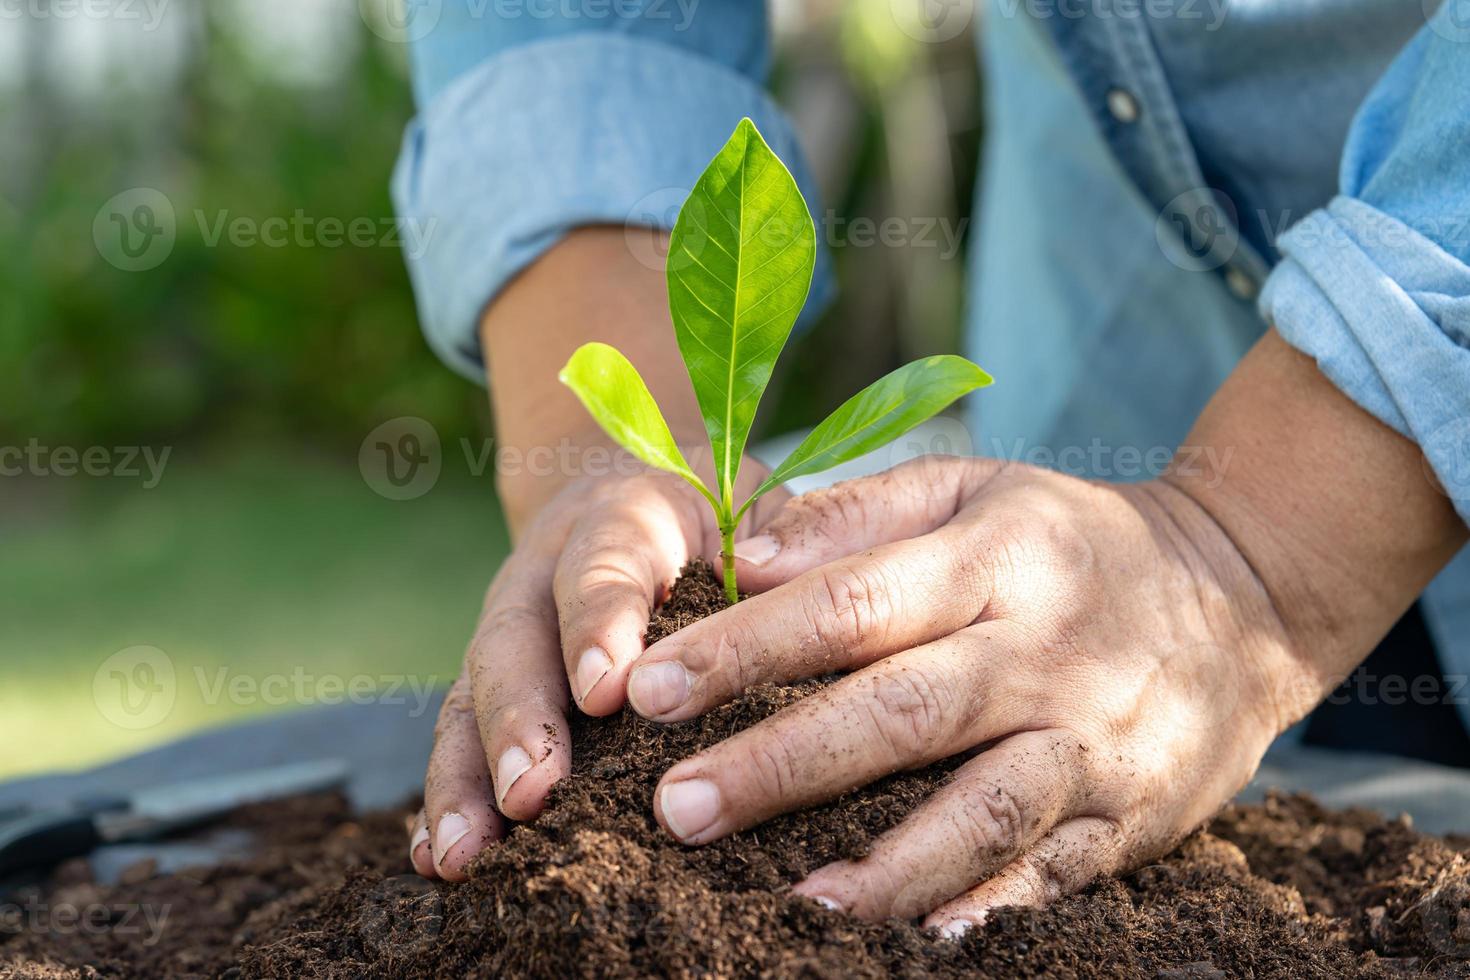 giardiniere donna pianta un' albero con torba muschio biologico importa Ottimizzare suolo per agricoltura biologico pianta in crescita, ecologia concetto. foto